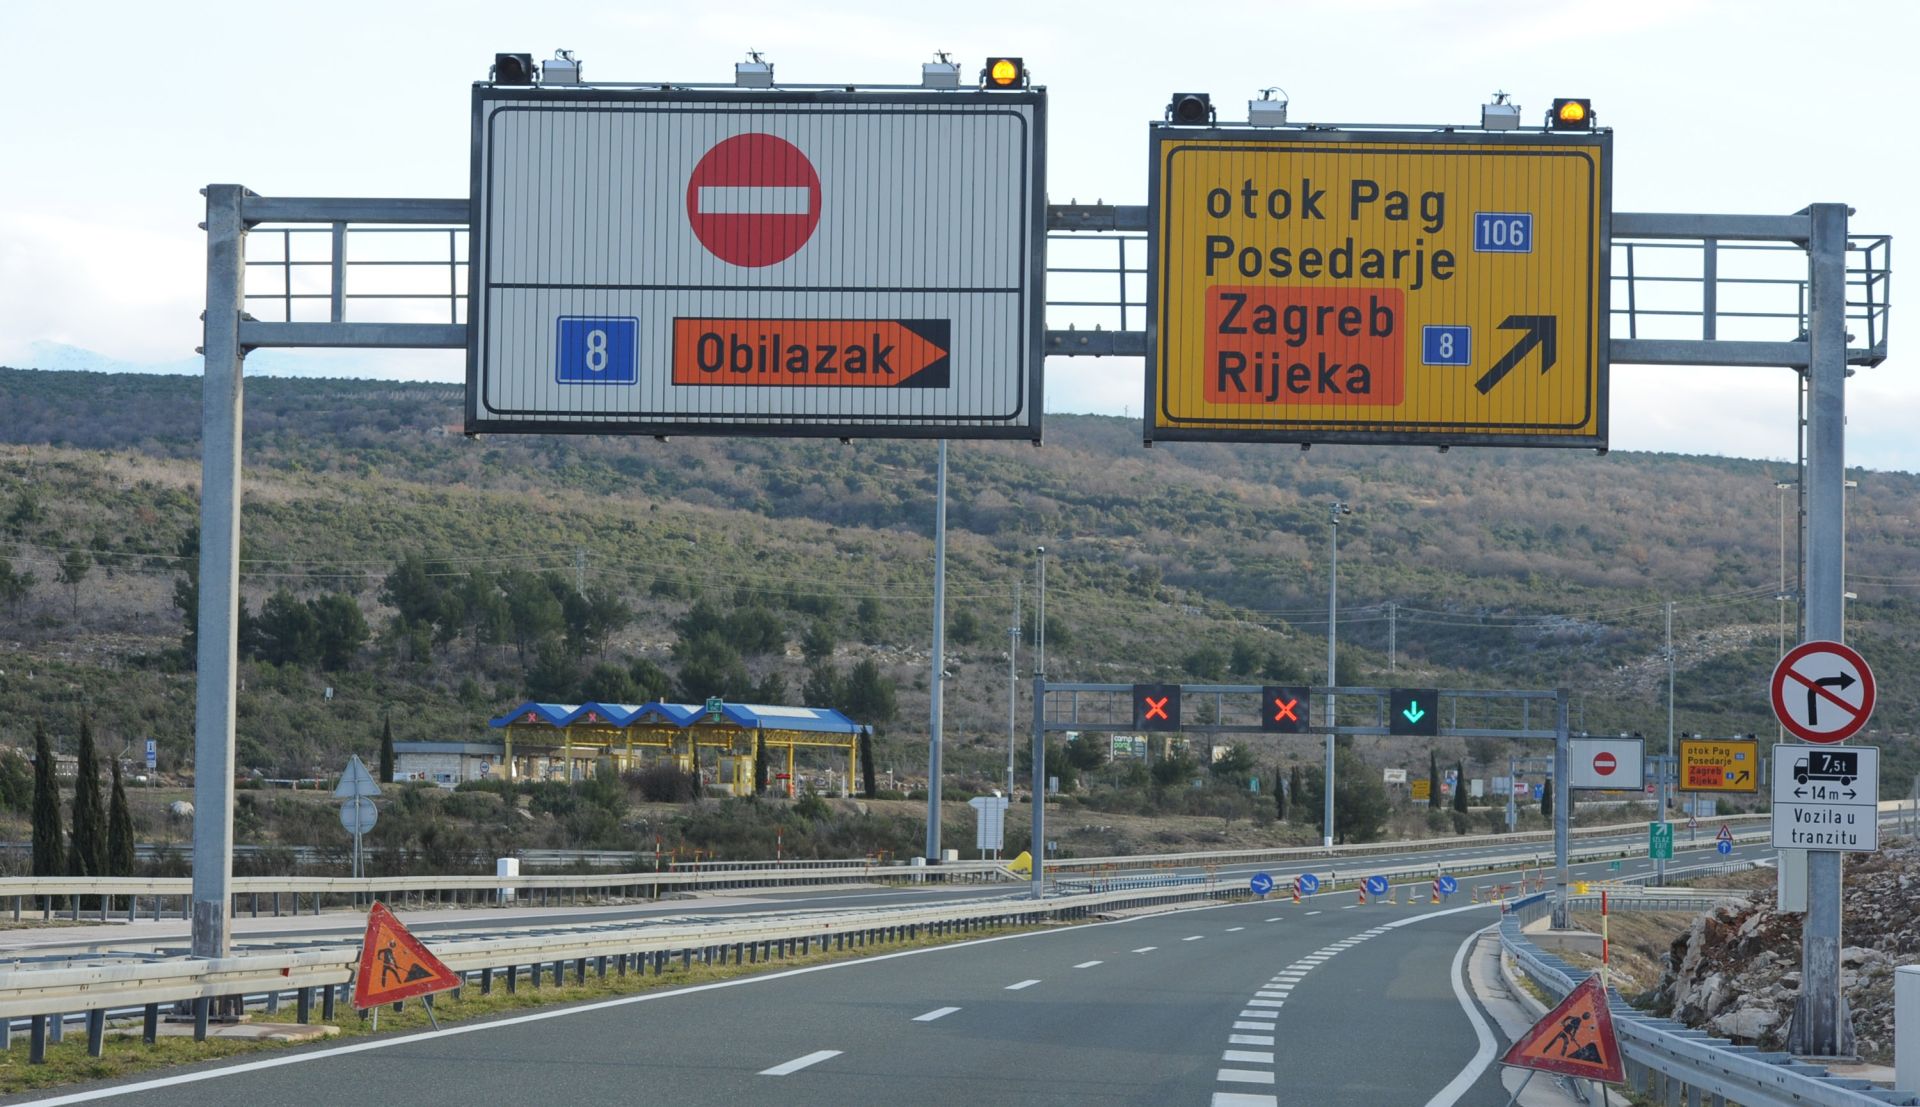 07.02.2015., Zadar - Zbog jake bure zatvorena autocesta A-1 Zagreb-Split, vozila se usmjeravaju na obilaznu D1 cestu.
Photo: Hrvoje Jelavic/PIXSELL